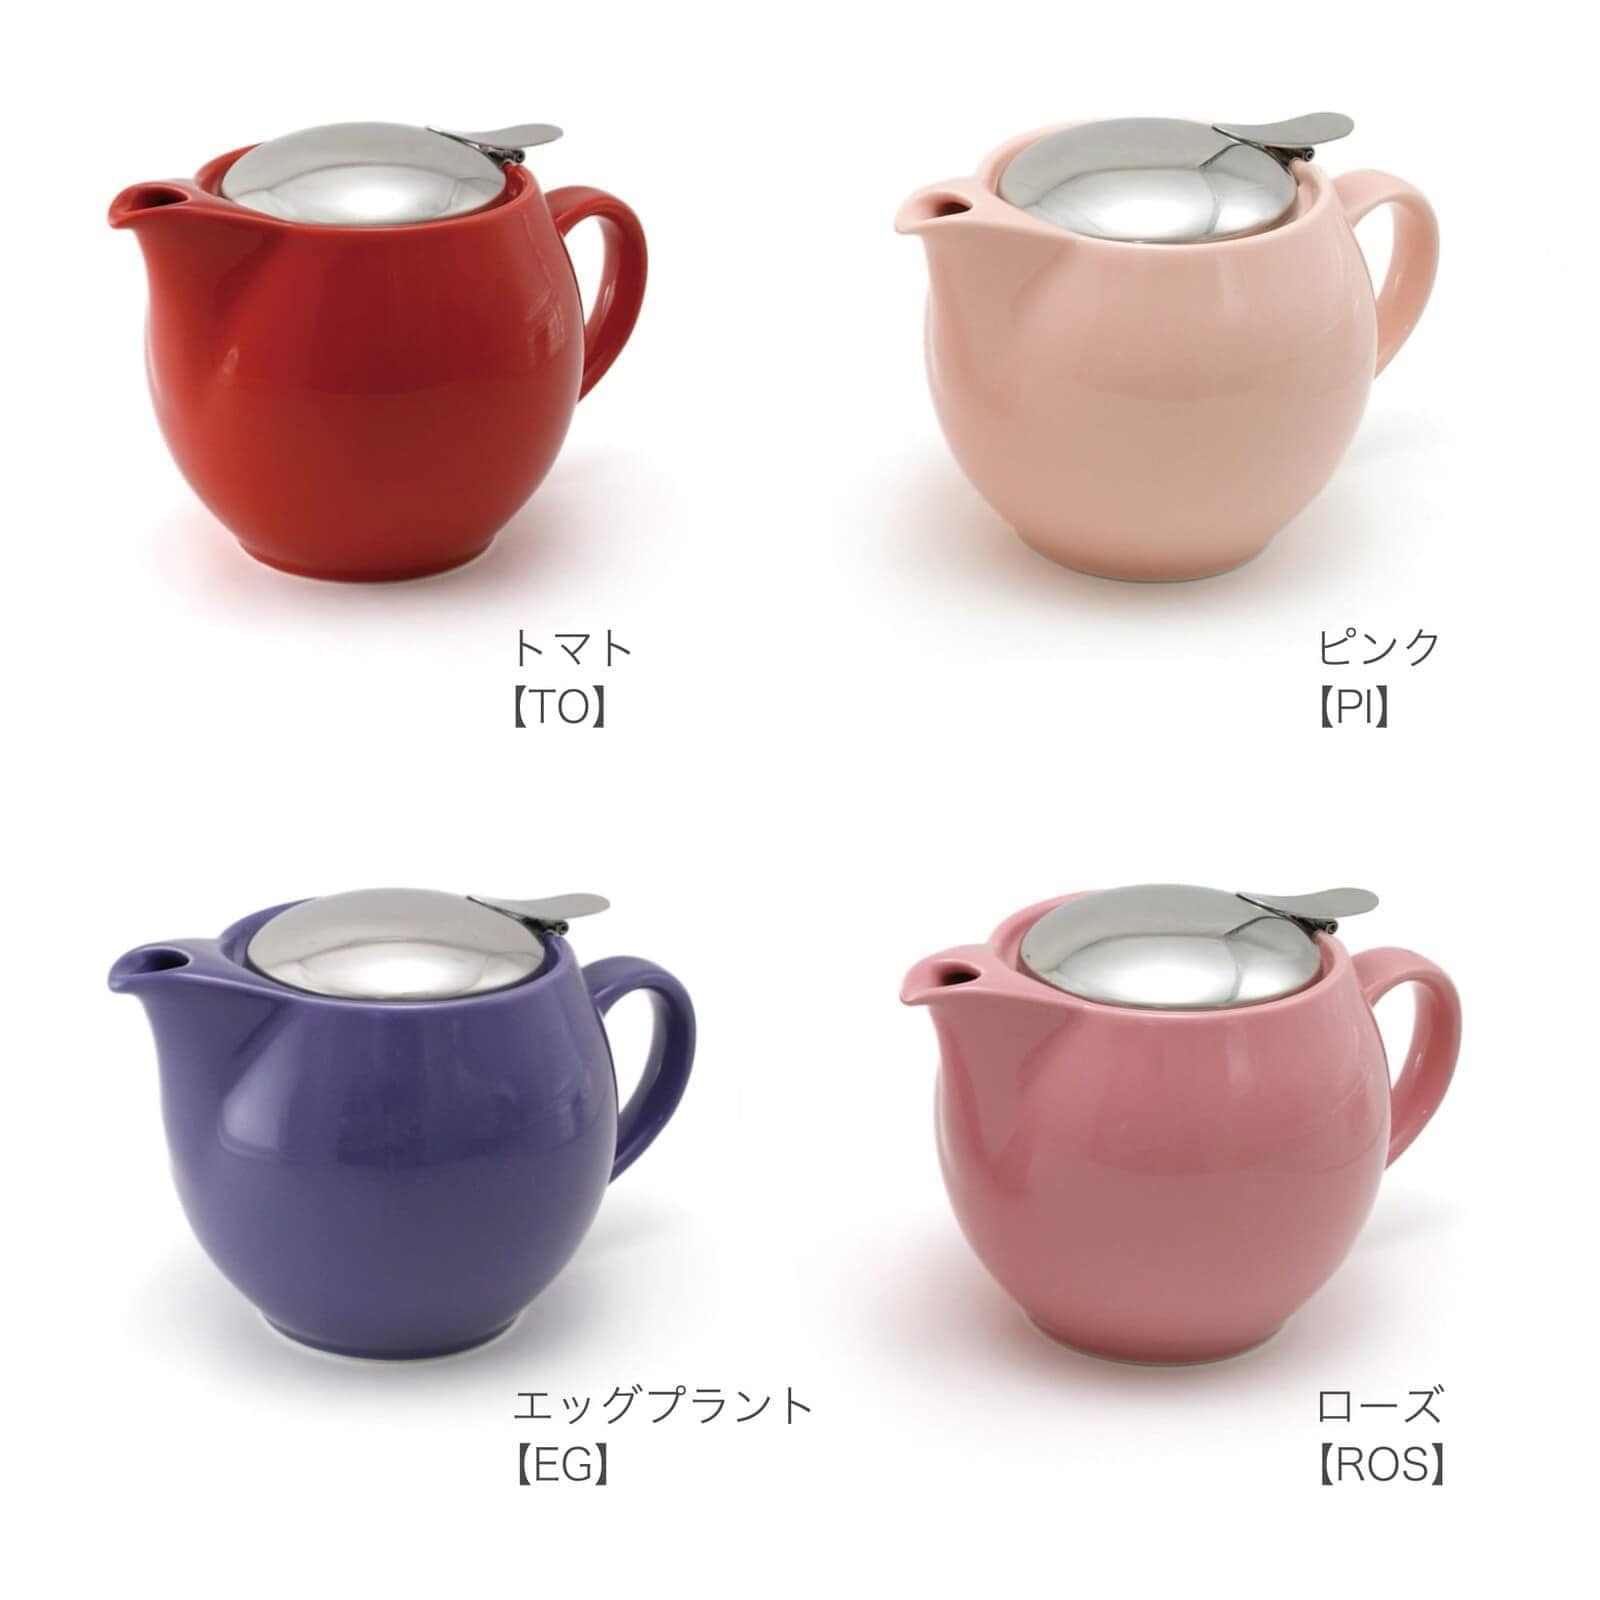 【cierto】Universal 茶壺 3人用 450cc 美濃燒4